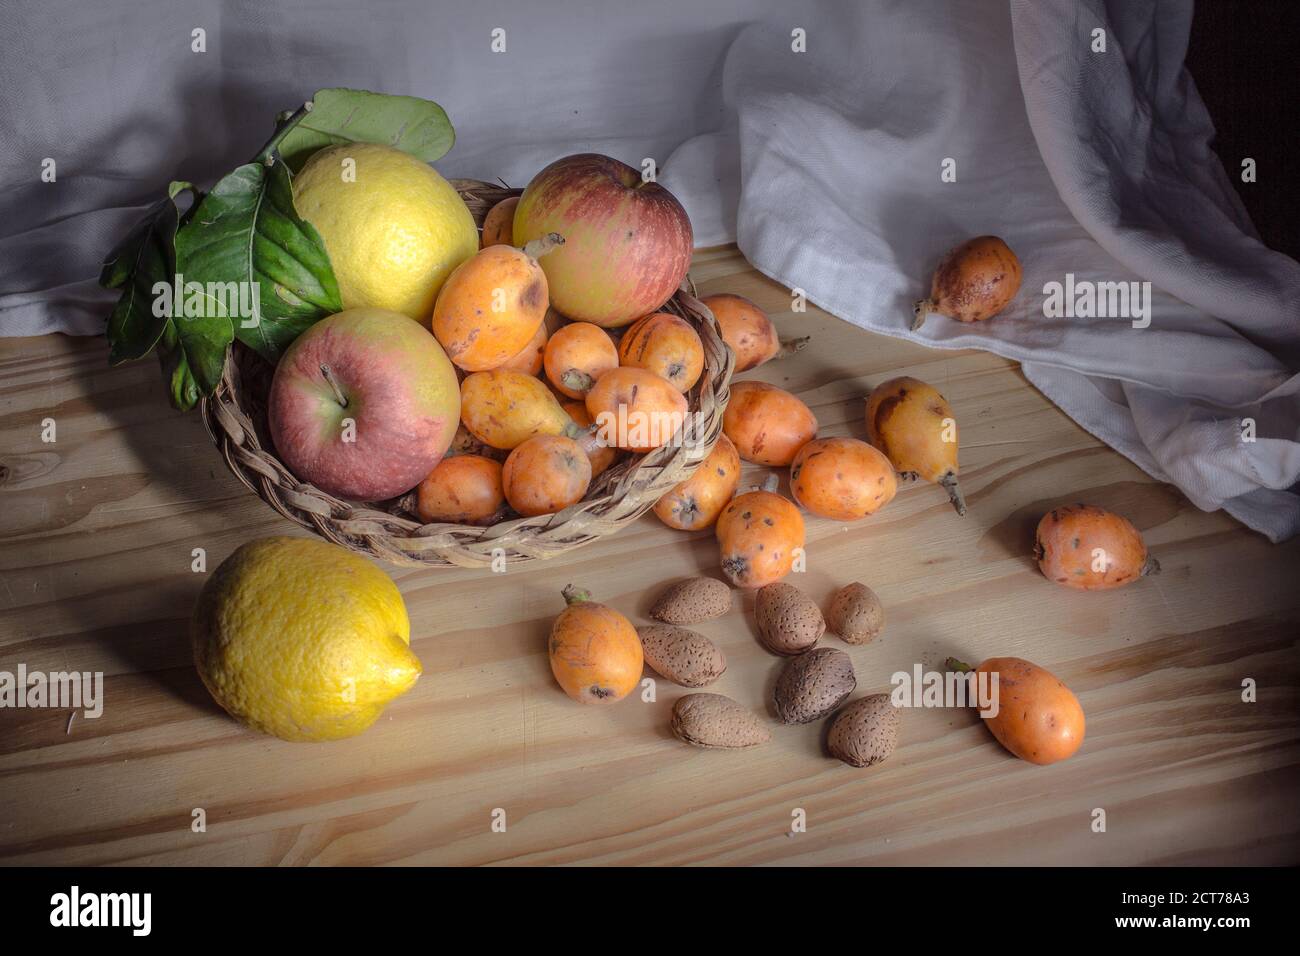 Stillleben in der Ligthmalerei mit einem kleinen Korbkorb mit Früchten, Mispel, Äpfeln, Zitronen und Mandeln in Schale. Stockfoto